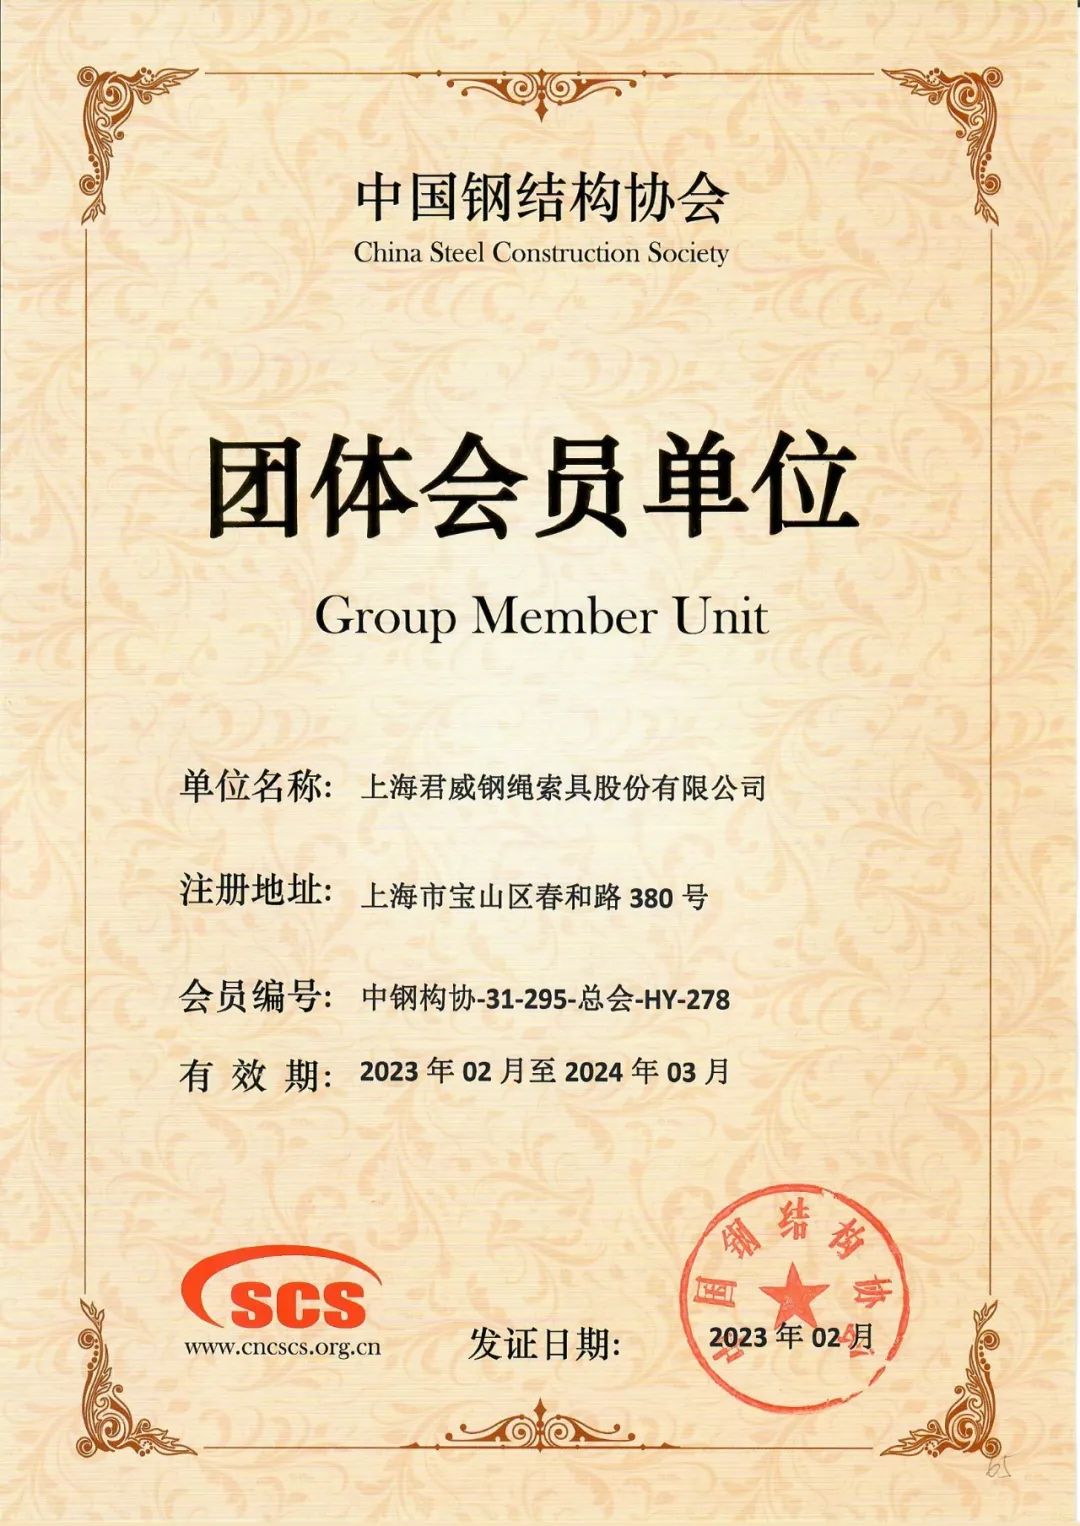 赞！君威钢绳索具荣获“中国钢结构协会团体会员单位”资格